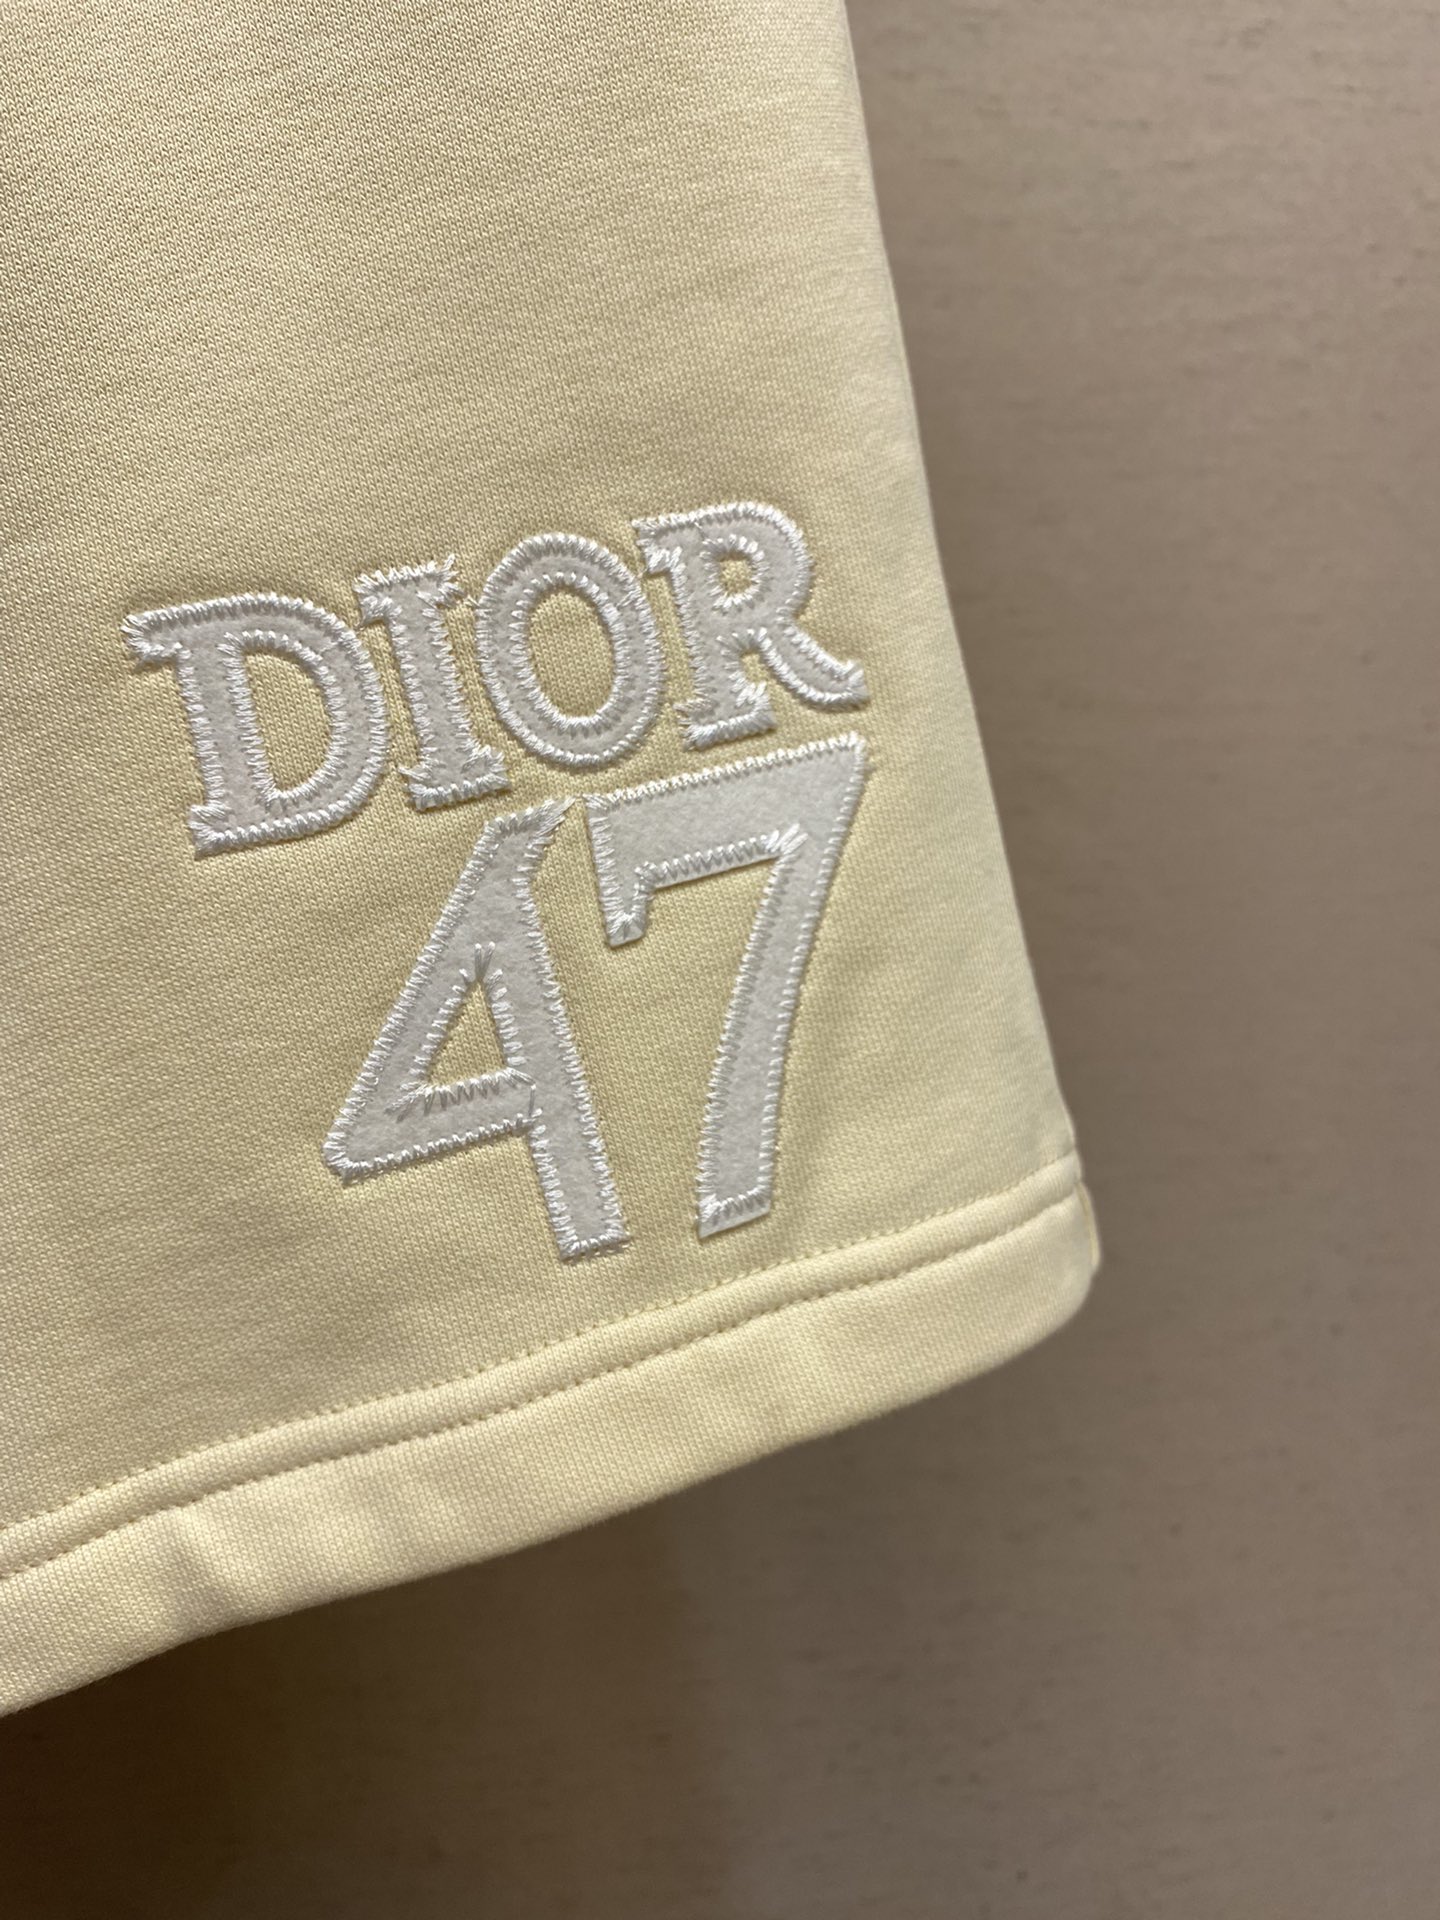 Dior24SS春夏新品47系列上市高克重毛圈棉布拼接抽绳短裤男女同款经典品牌字母刺绣标识设计风格加上2